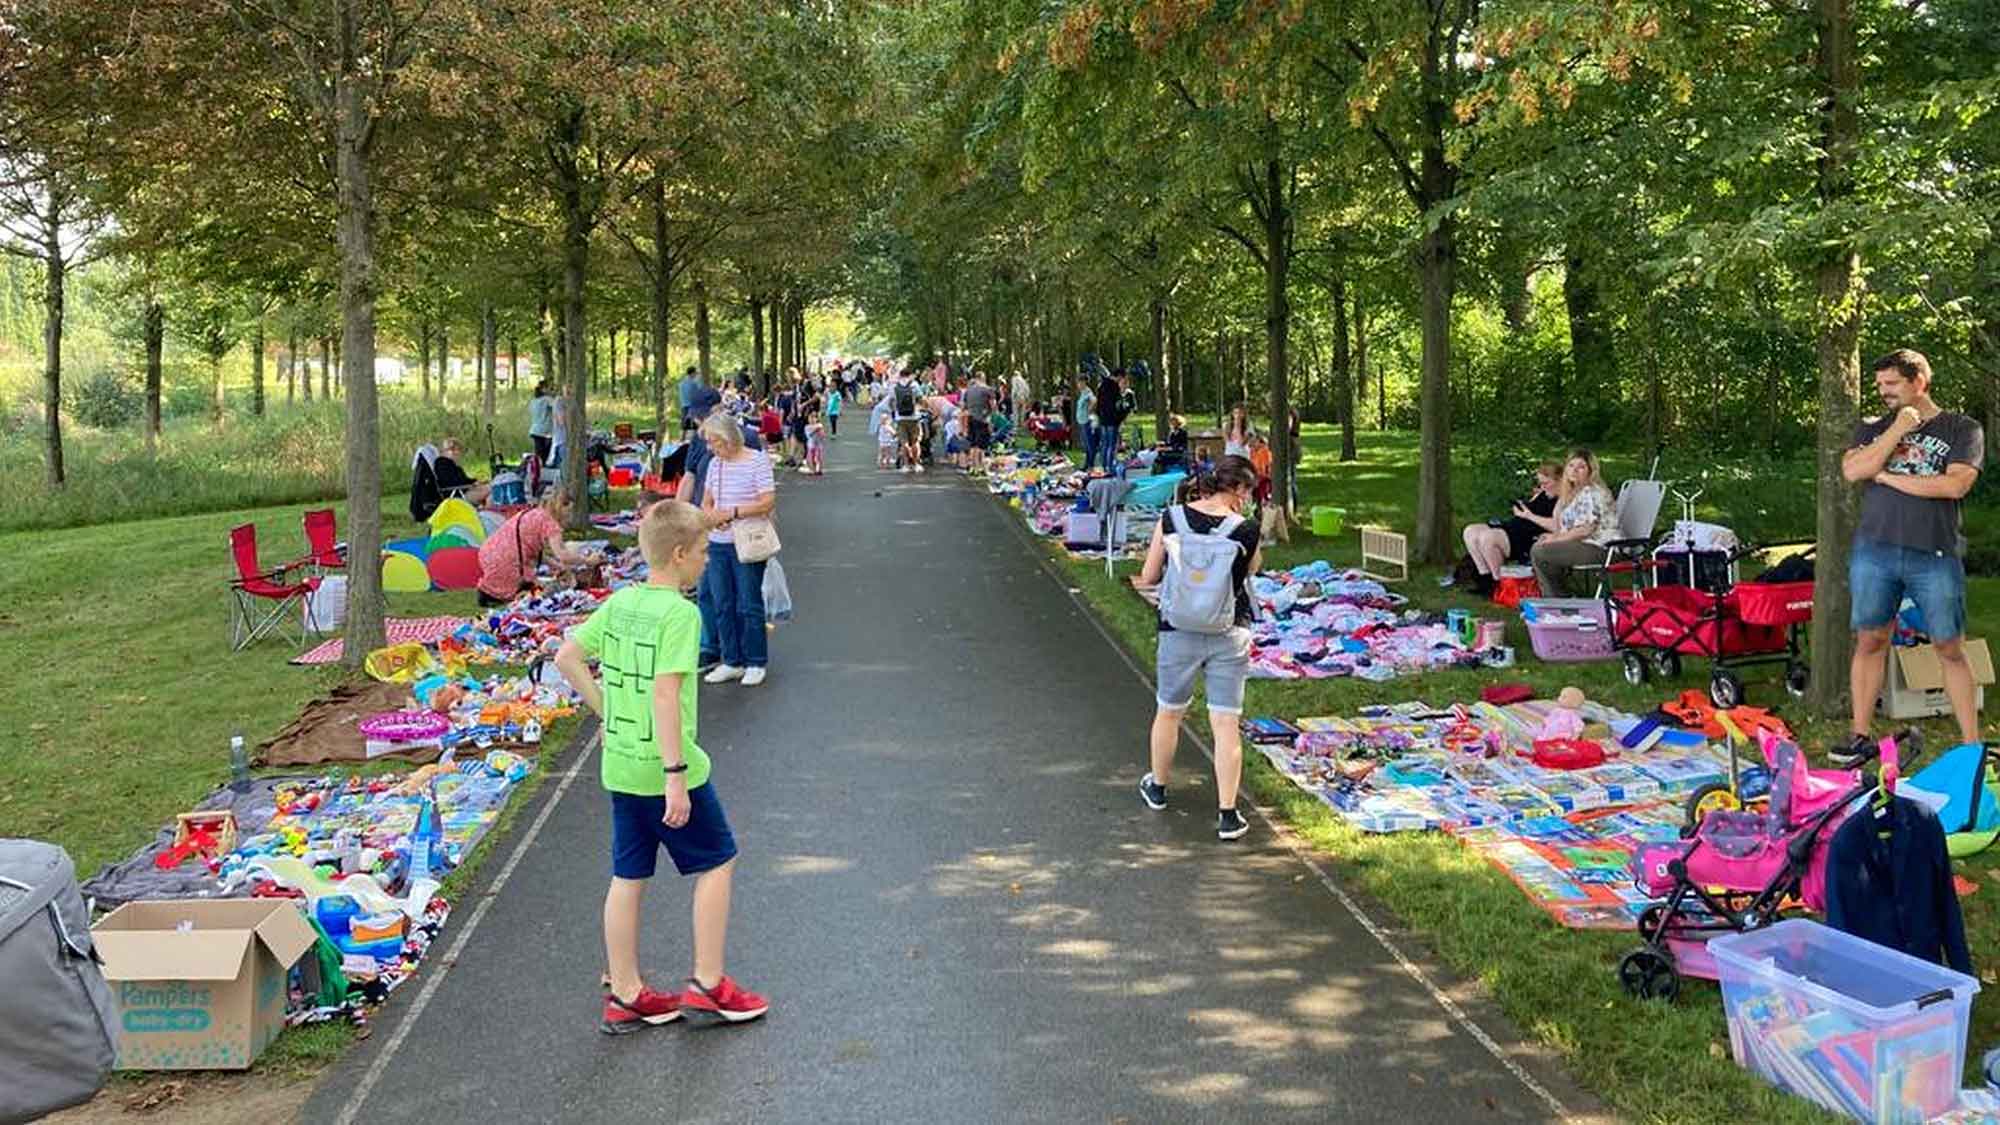 Tkm rotz Regens recht zufrieden mit der Sommersaison, Gartenschaupark Rietberg knackt erneut 200.000 Besucher Marke